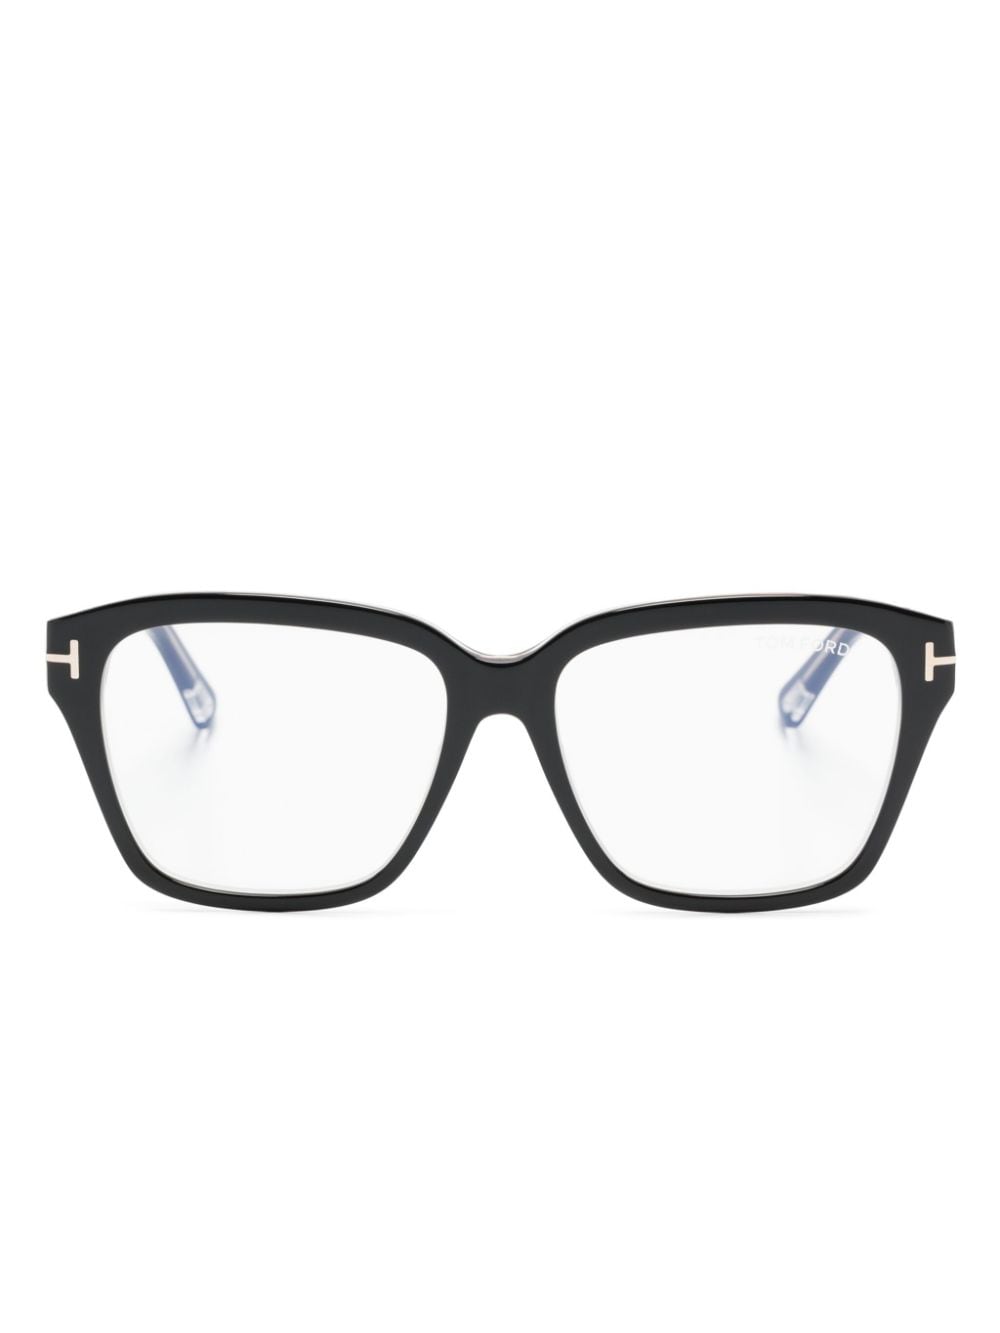 TOM FORD Eyewear Brille mit breitem Gestell - Schwarz von TOM FORD Eyewear